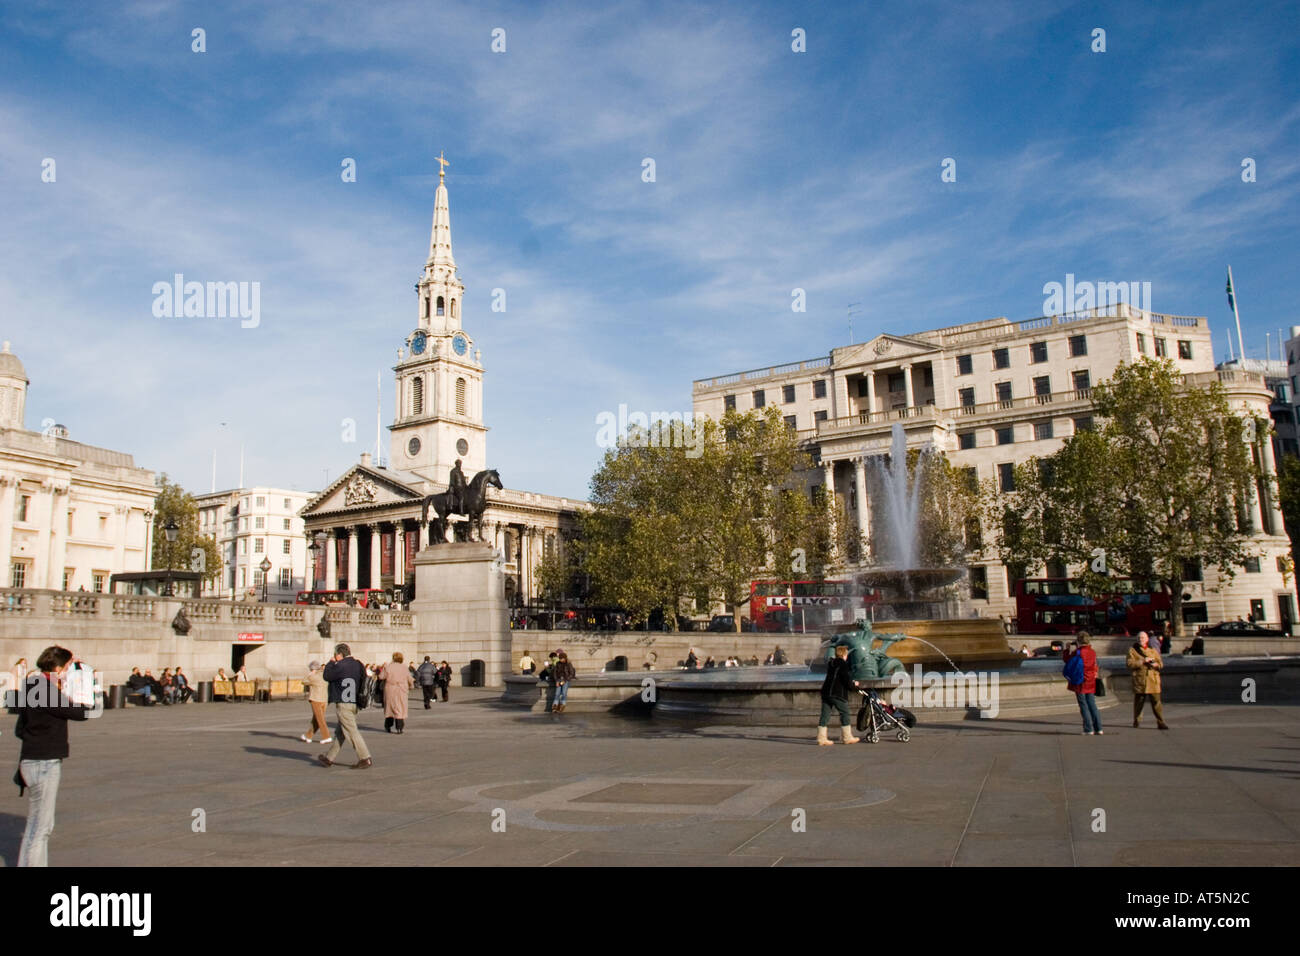 Saint Martin dans le domaine de l'église à Trafalgar Square Londres GB Royaume-Uni sur une journée ensoleillée Banque D'Images